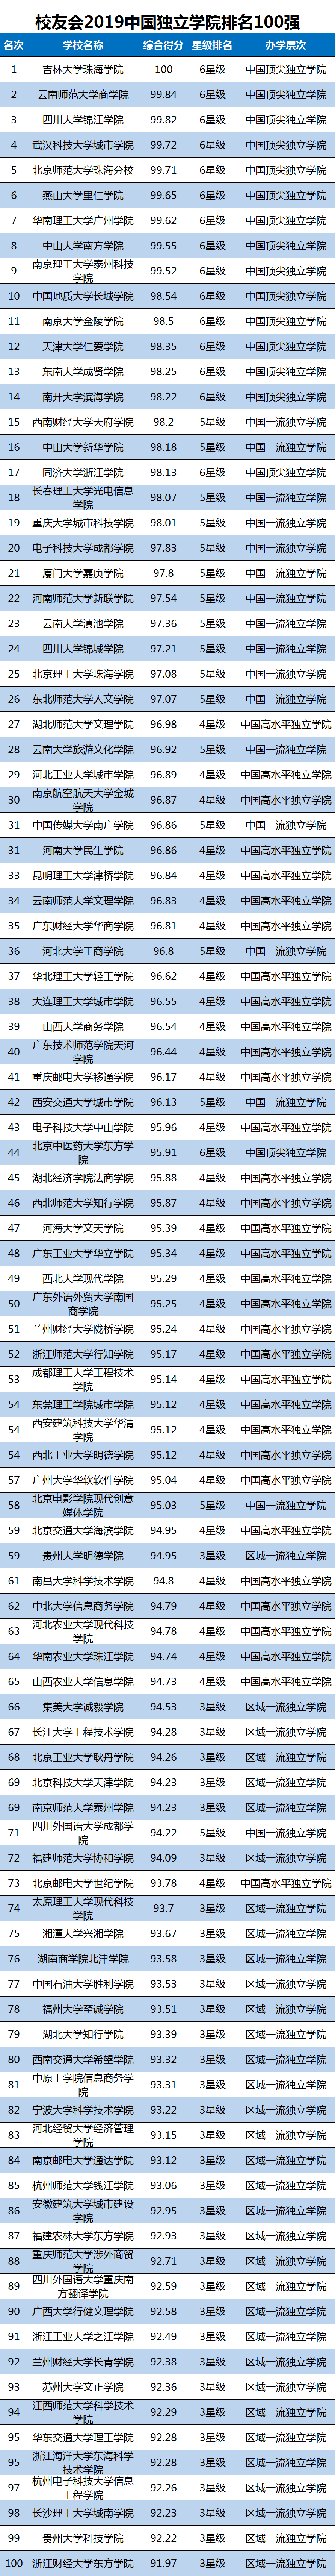 2019中国各地区大学综合竞争力排行榜，华东百强最多，华北一流大学最多